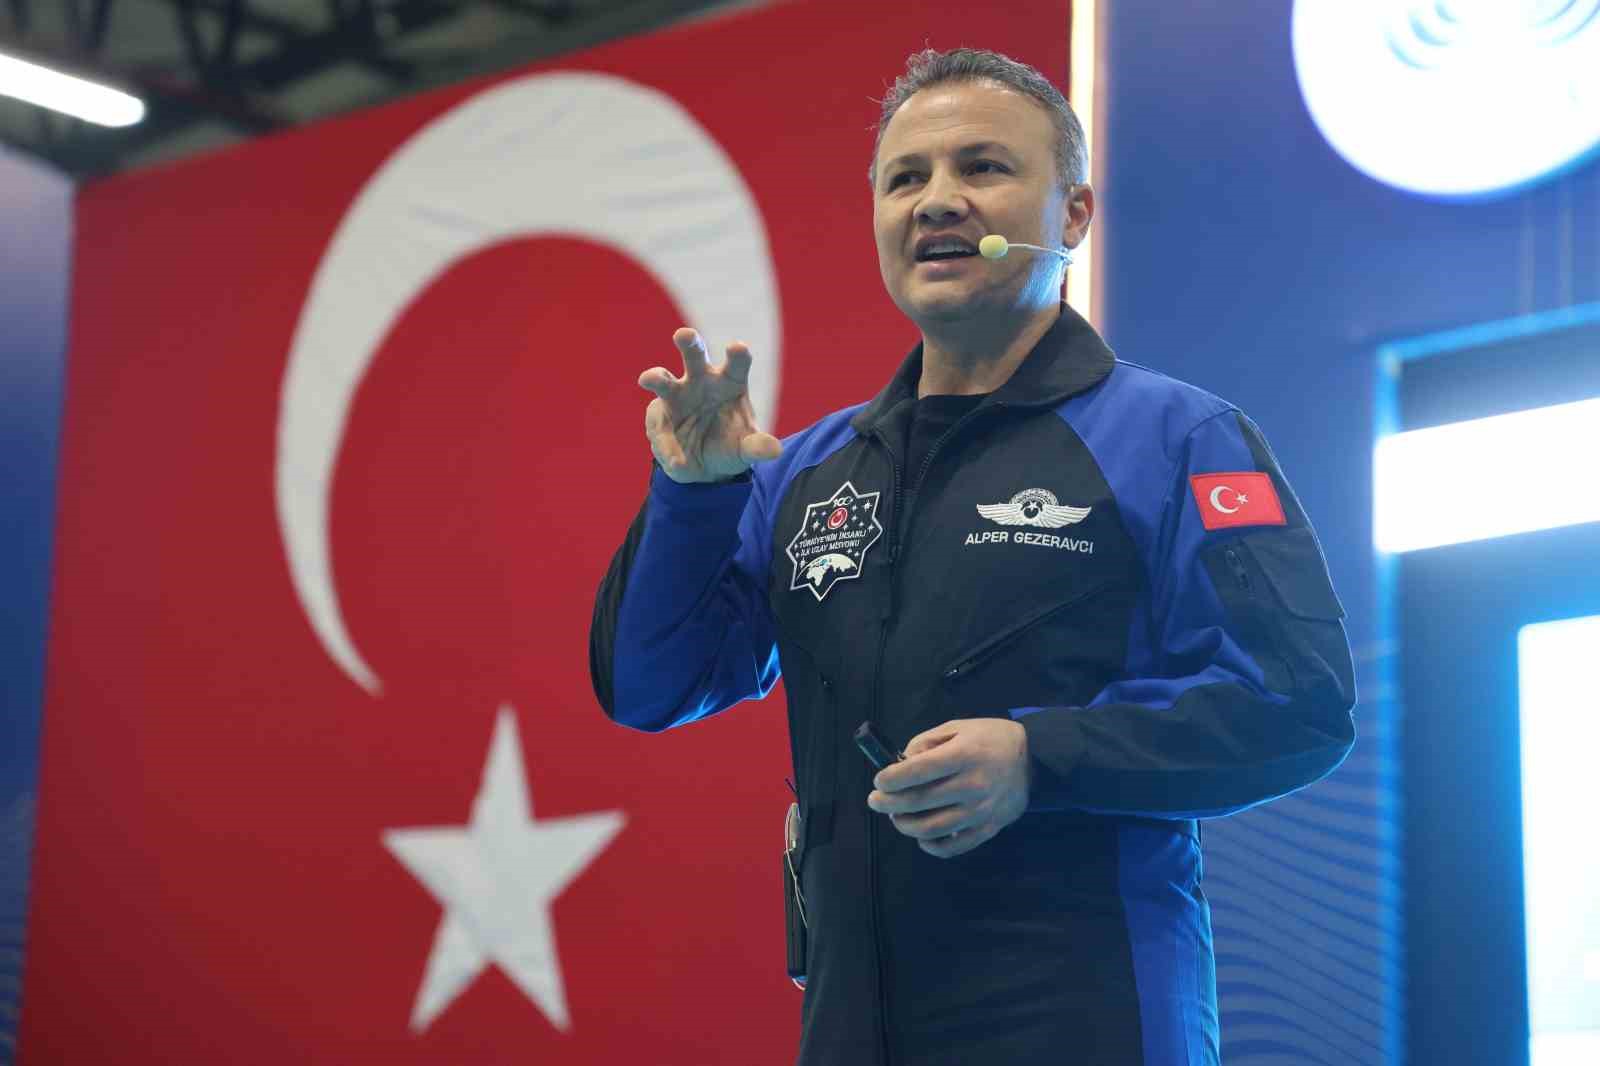 İlk Türk astronot Alper Gezeravcı: ’’Bu bir yere varış hikayesi değildi’’
